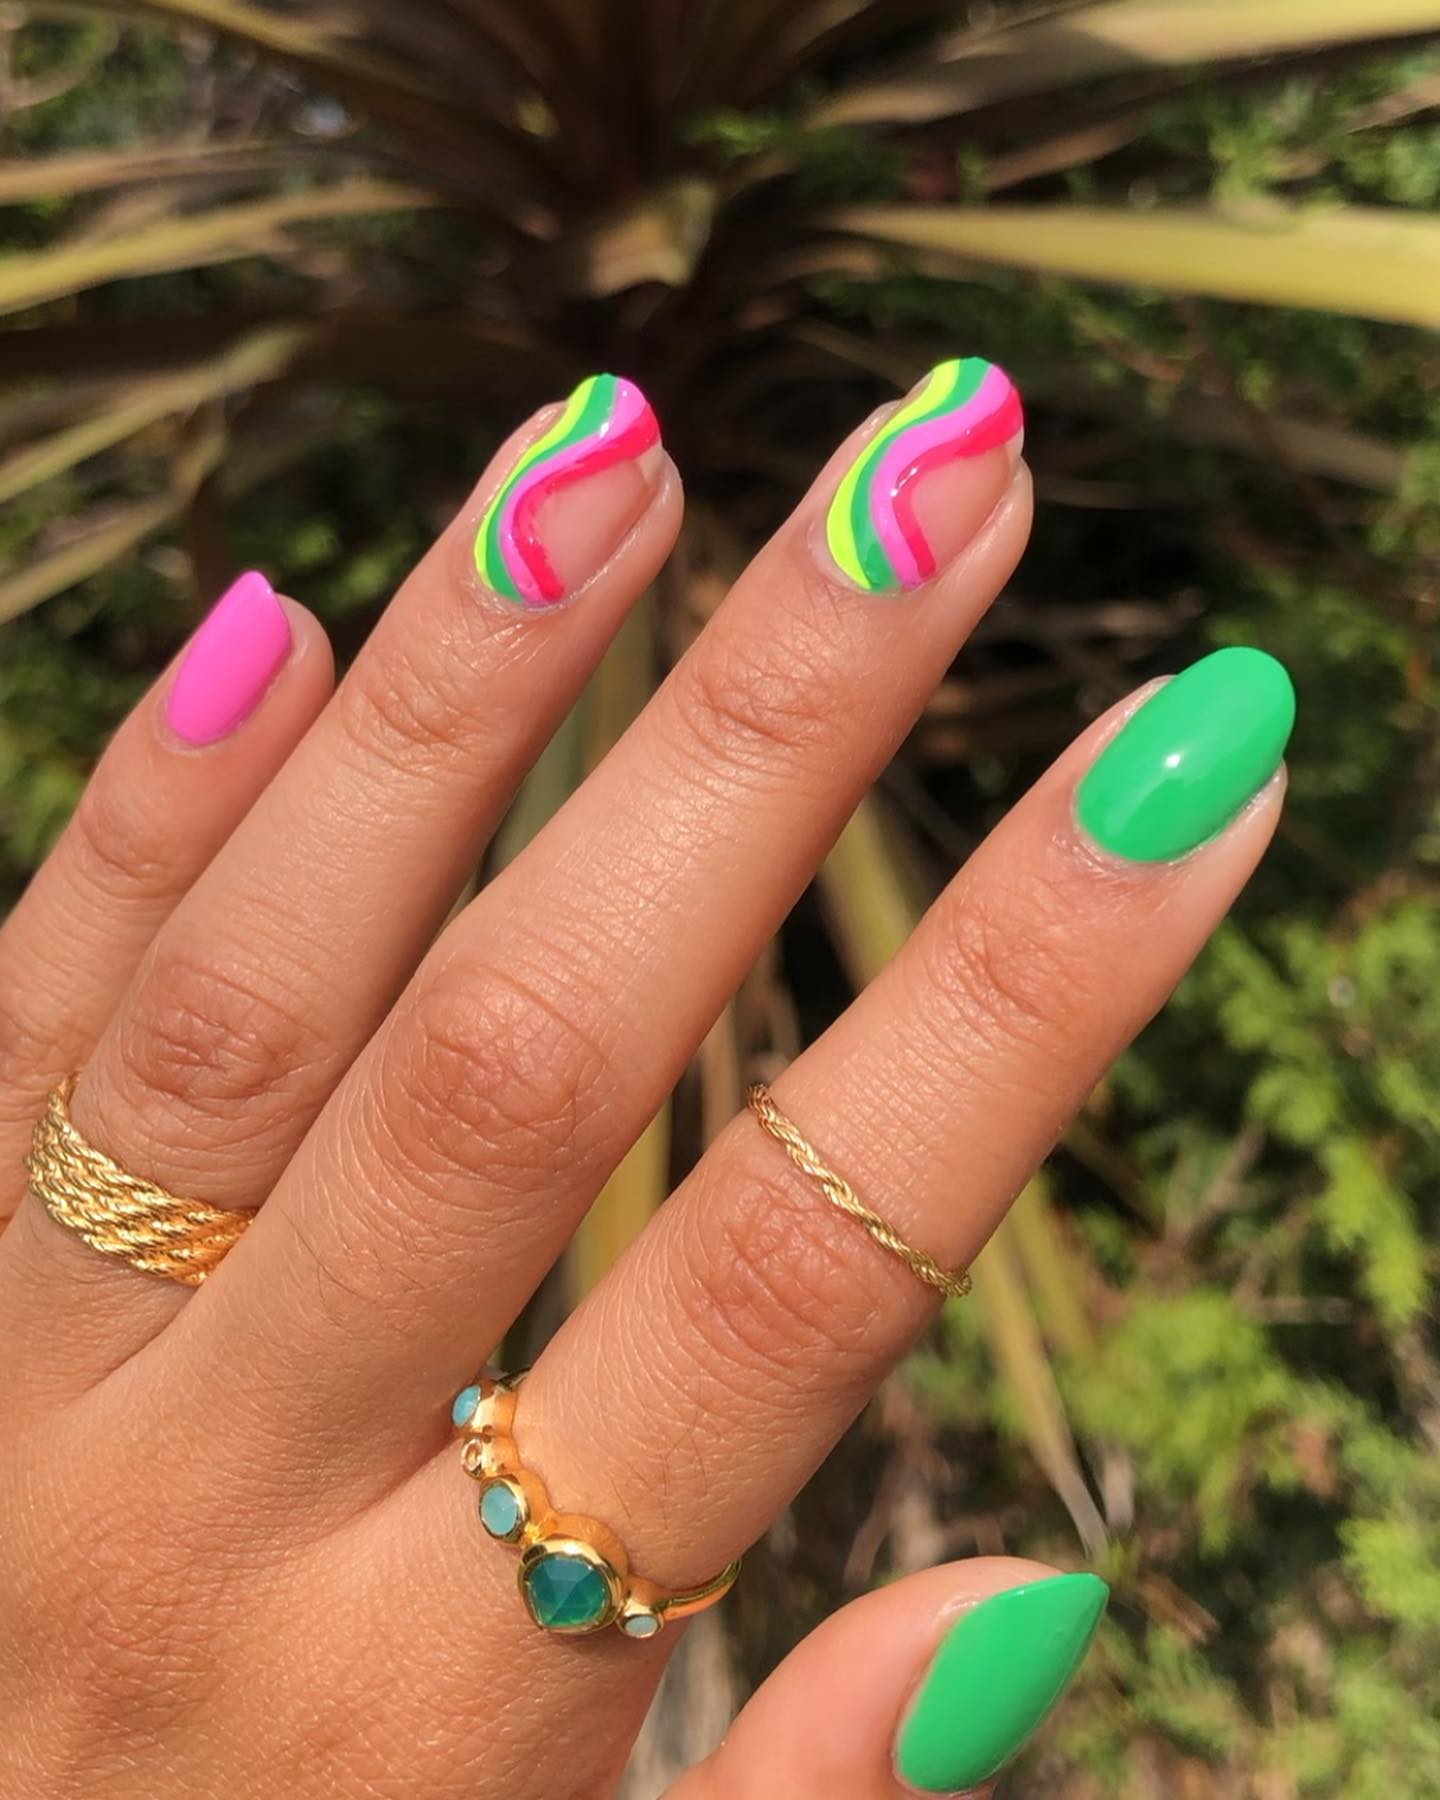 No todas tus uñas deberían estar llenas de remolinos.  Puedes tener remolinos como tus uñas decorativas como las de arriba.  Los colores también combinan mucho.